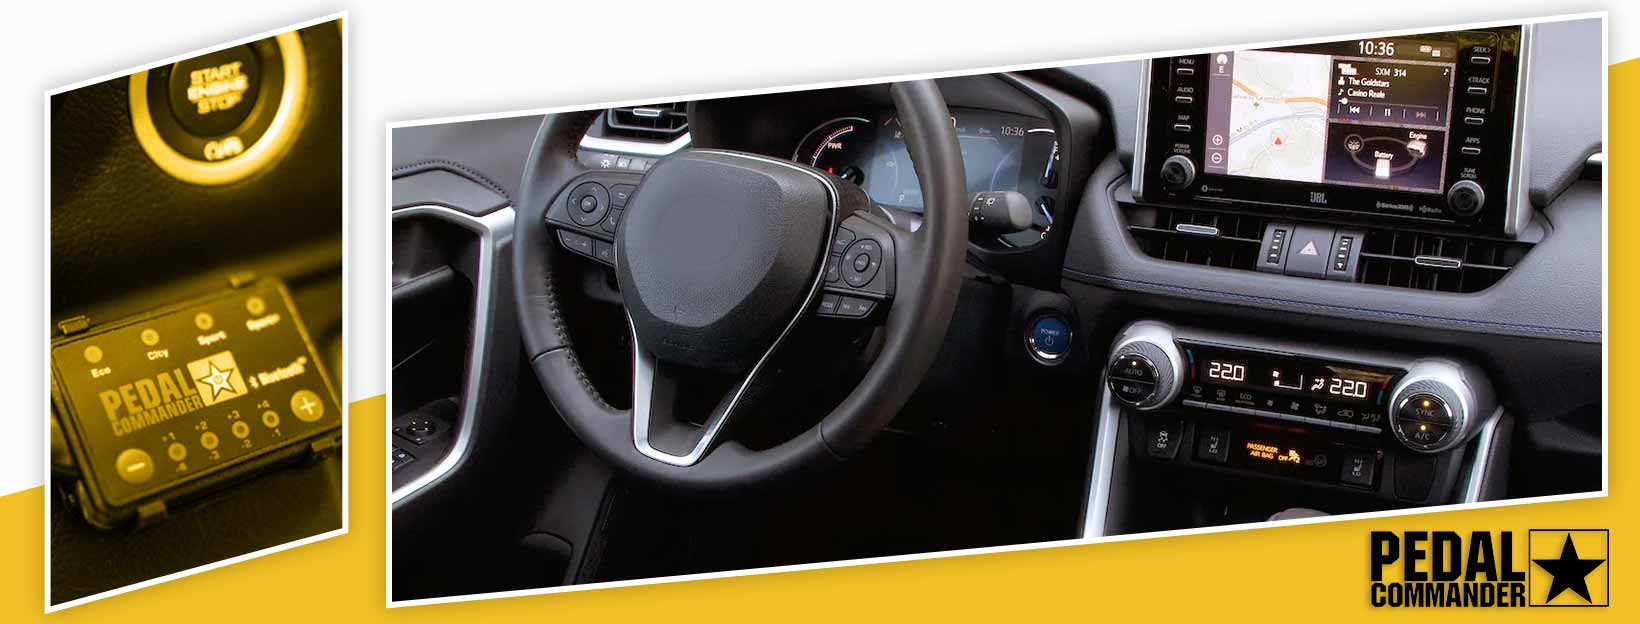 Pedal Commander for Toyota RAV4 - interior